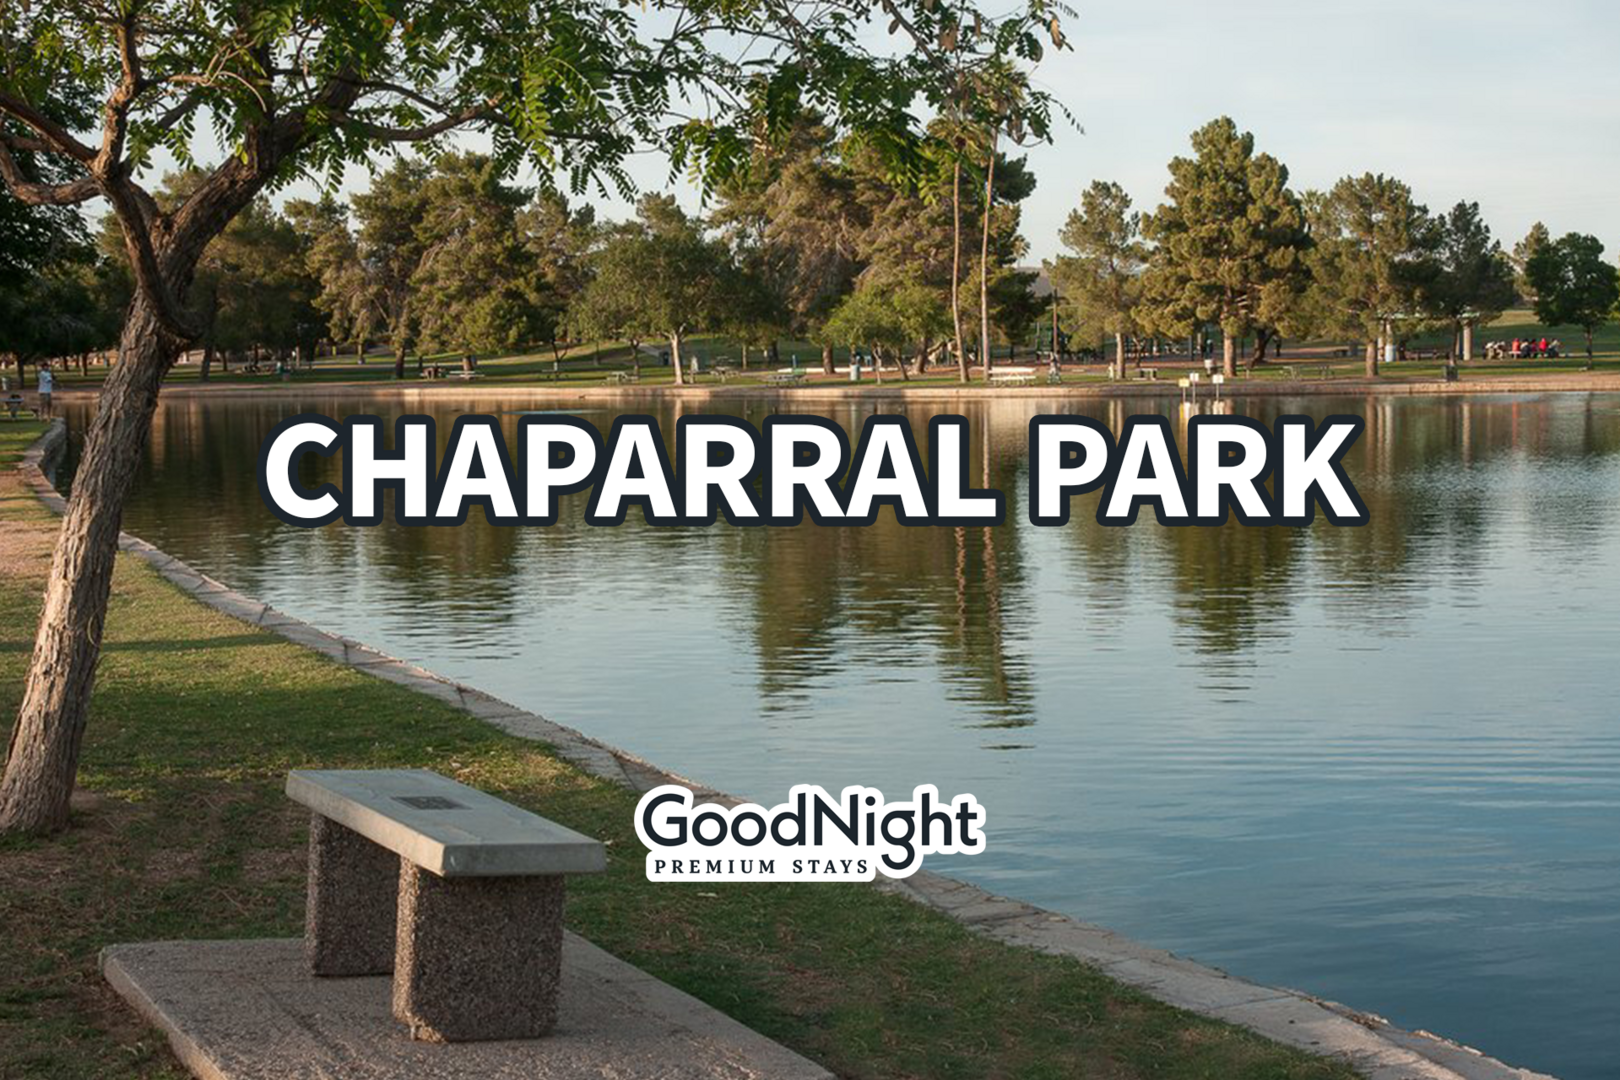 Chaparral Park: 4 mins